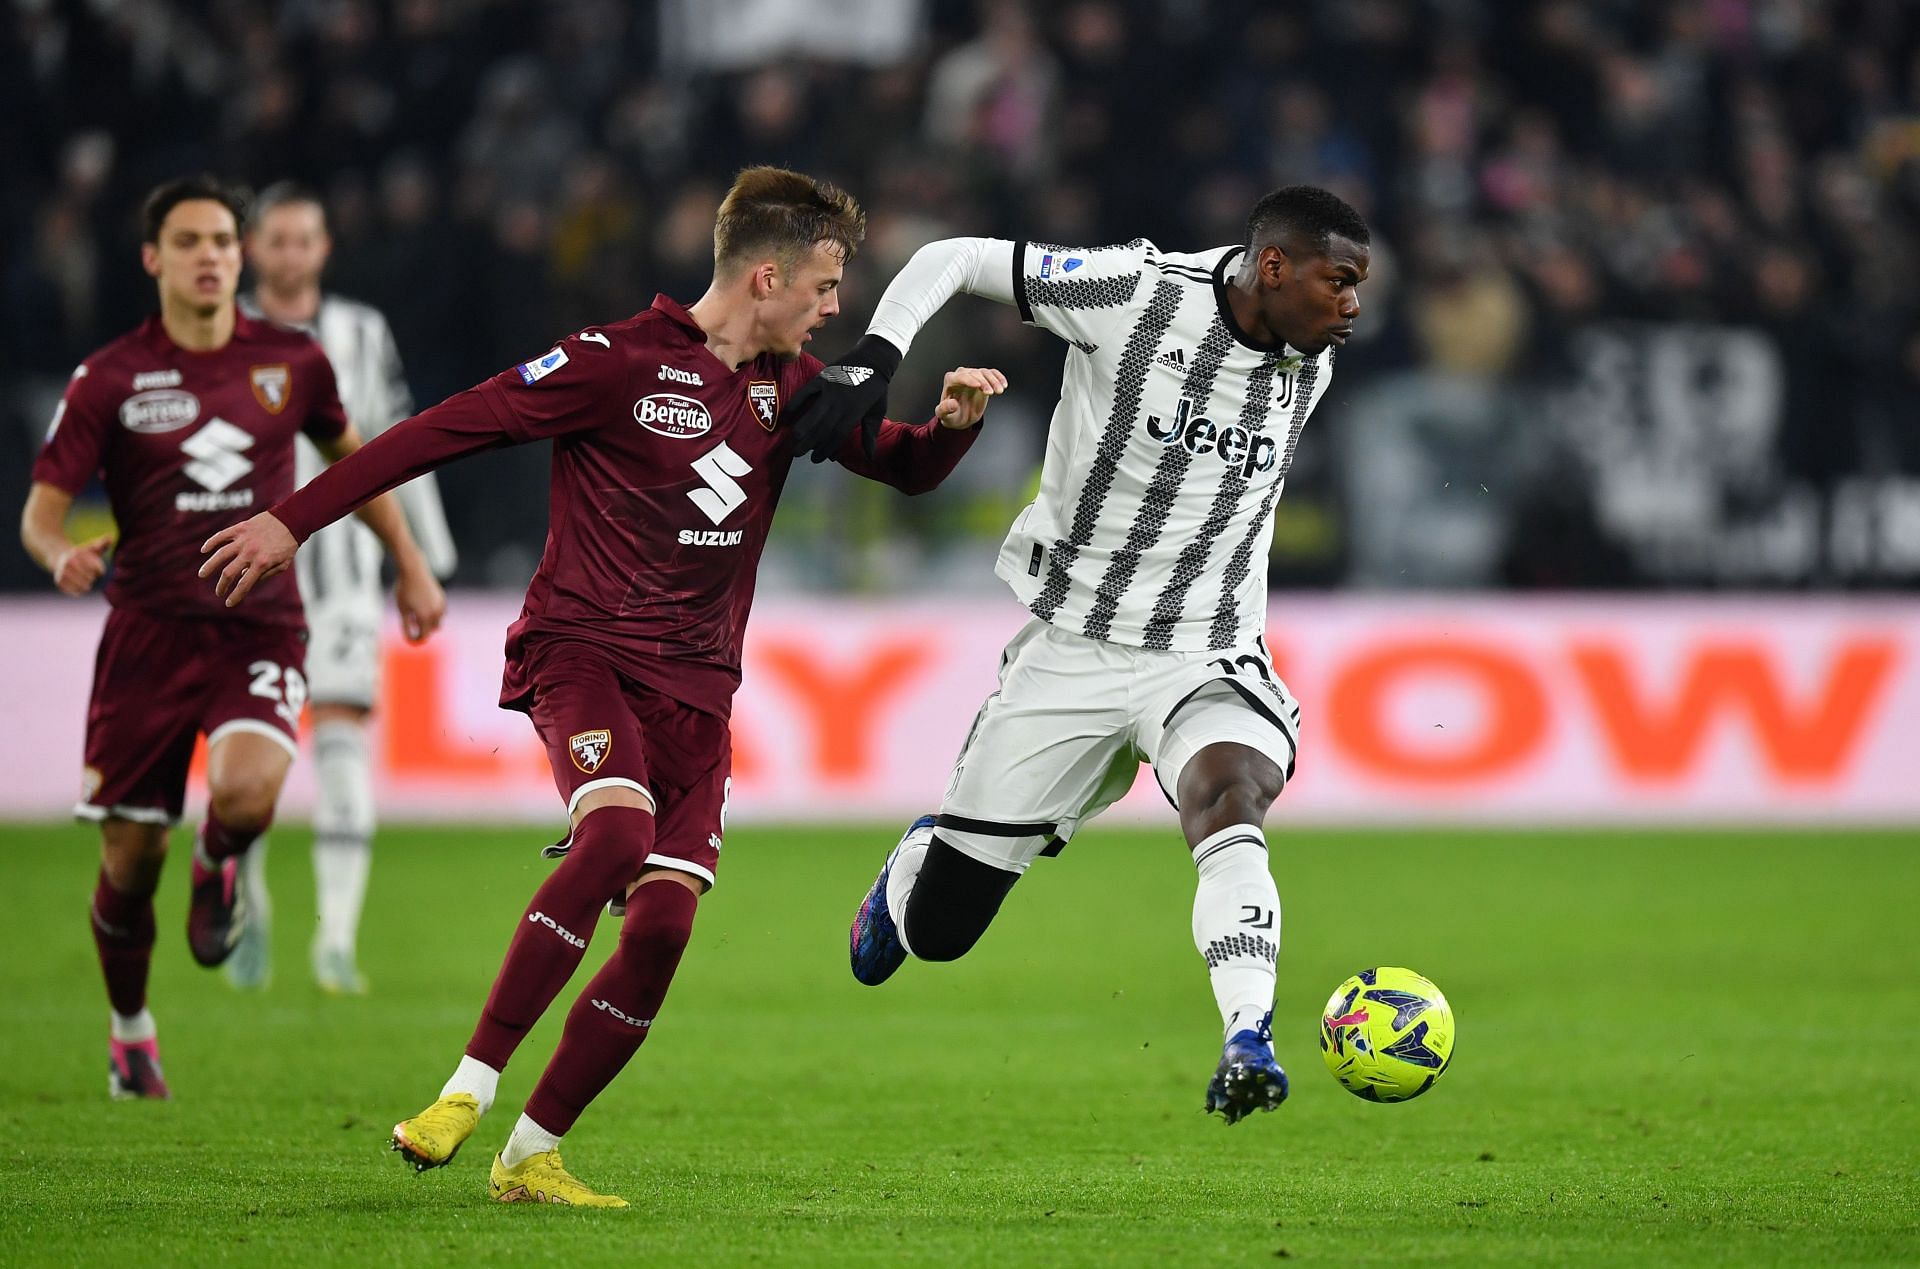 Juventus x Torino - SoccerBlog